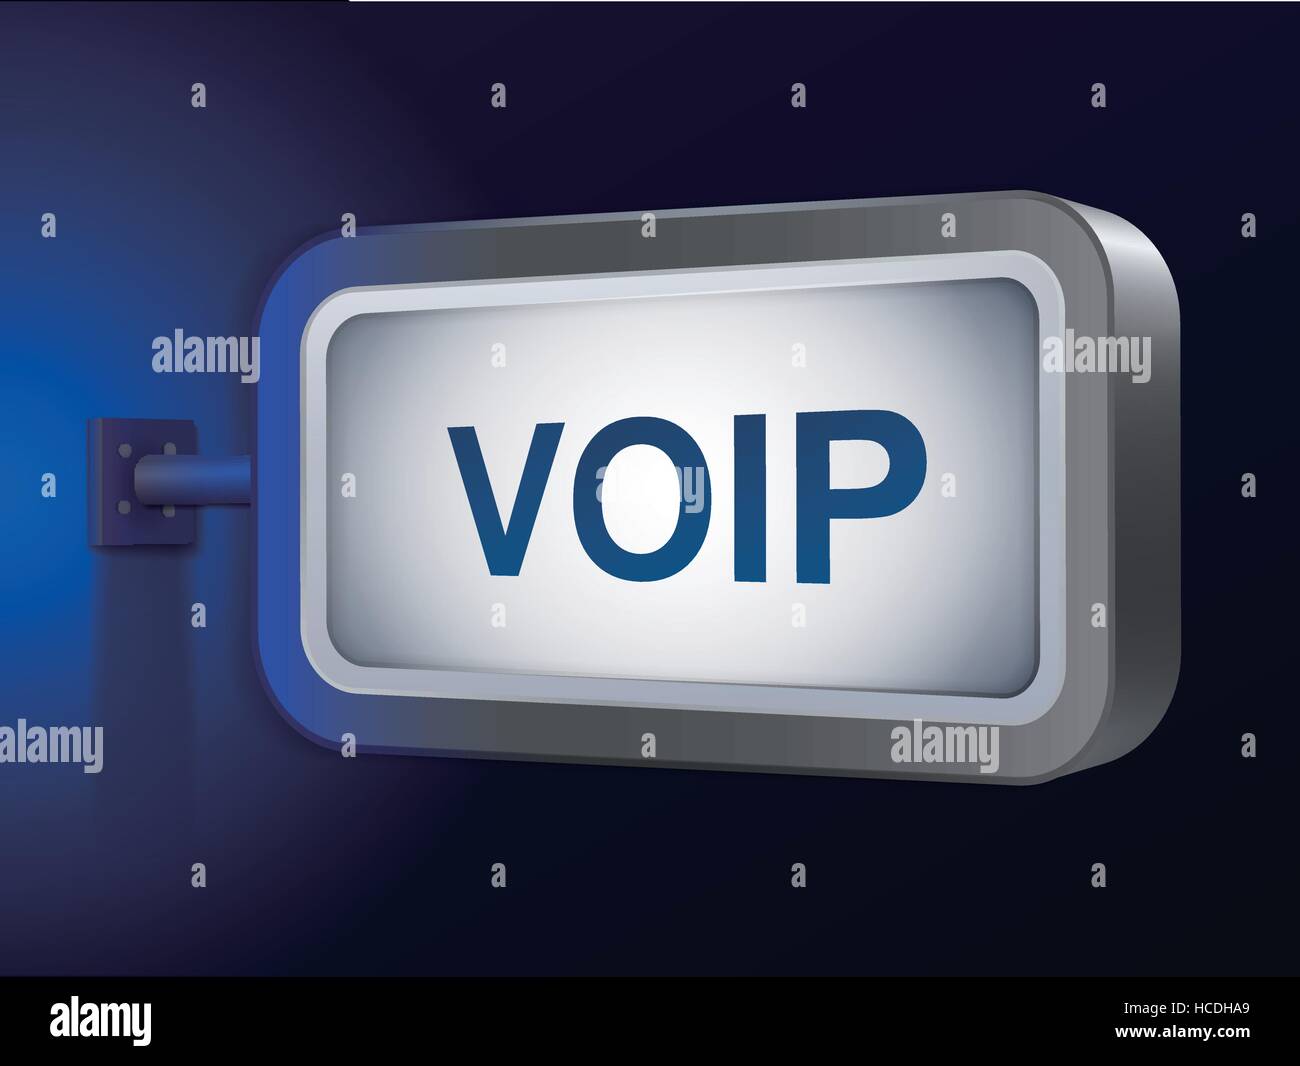 Mot VOIP sur billboard sur fond bleu Illustration de Vecteur